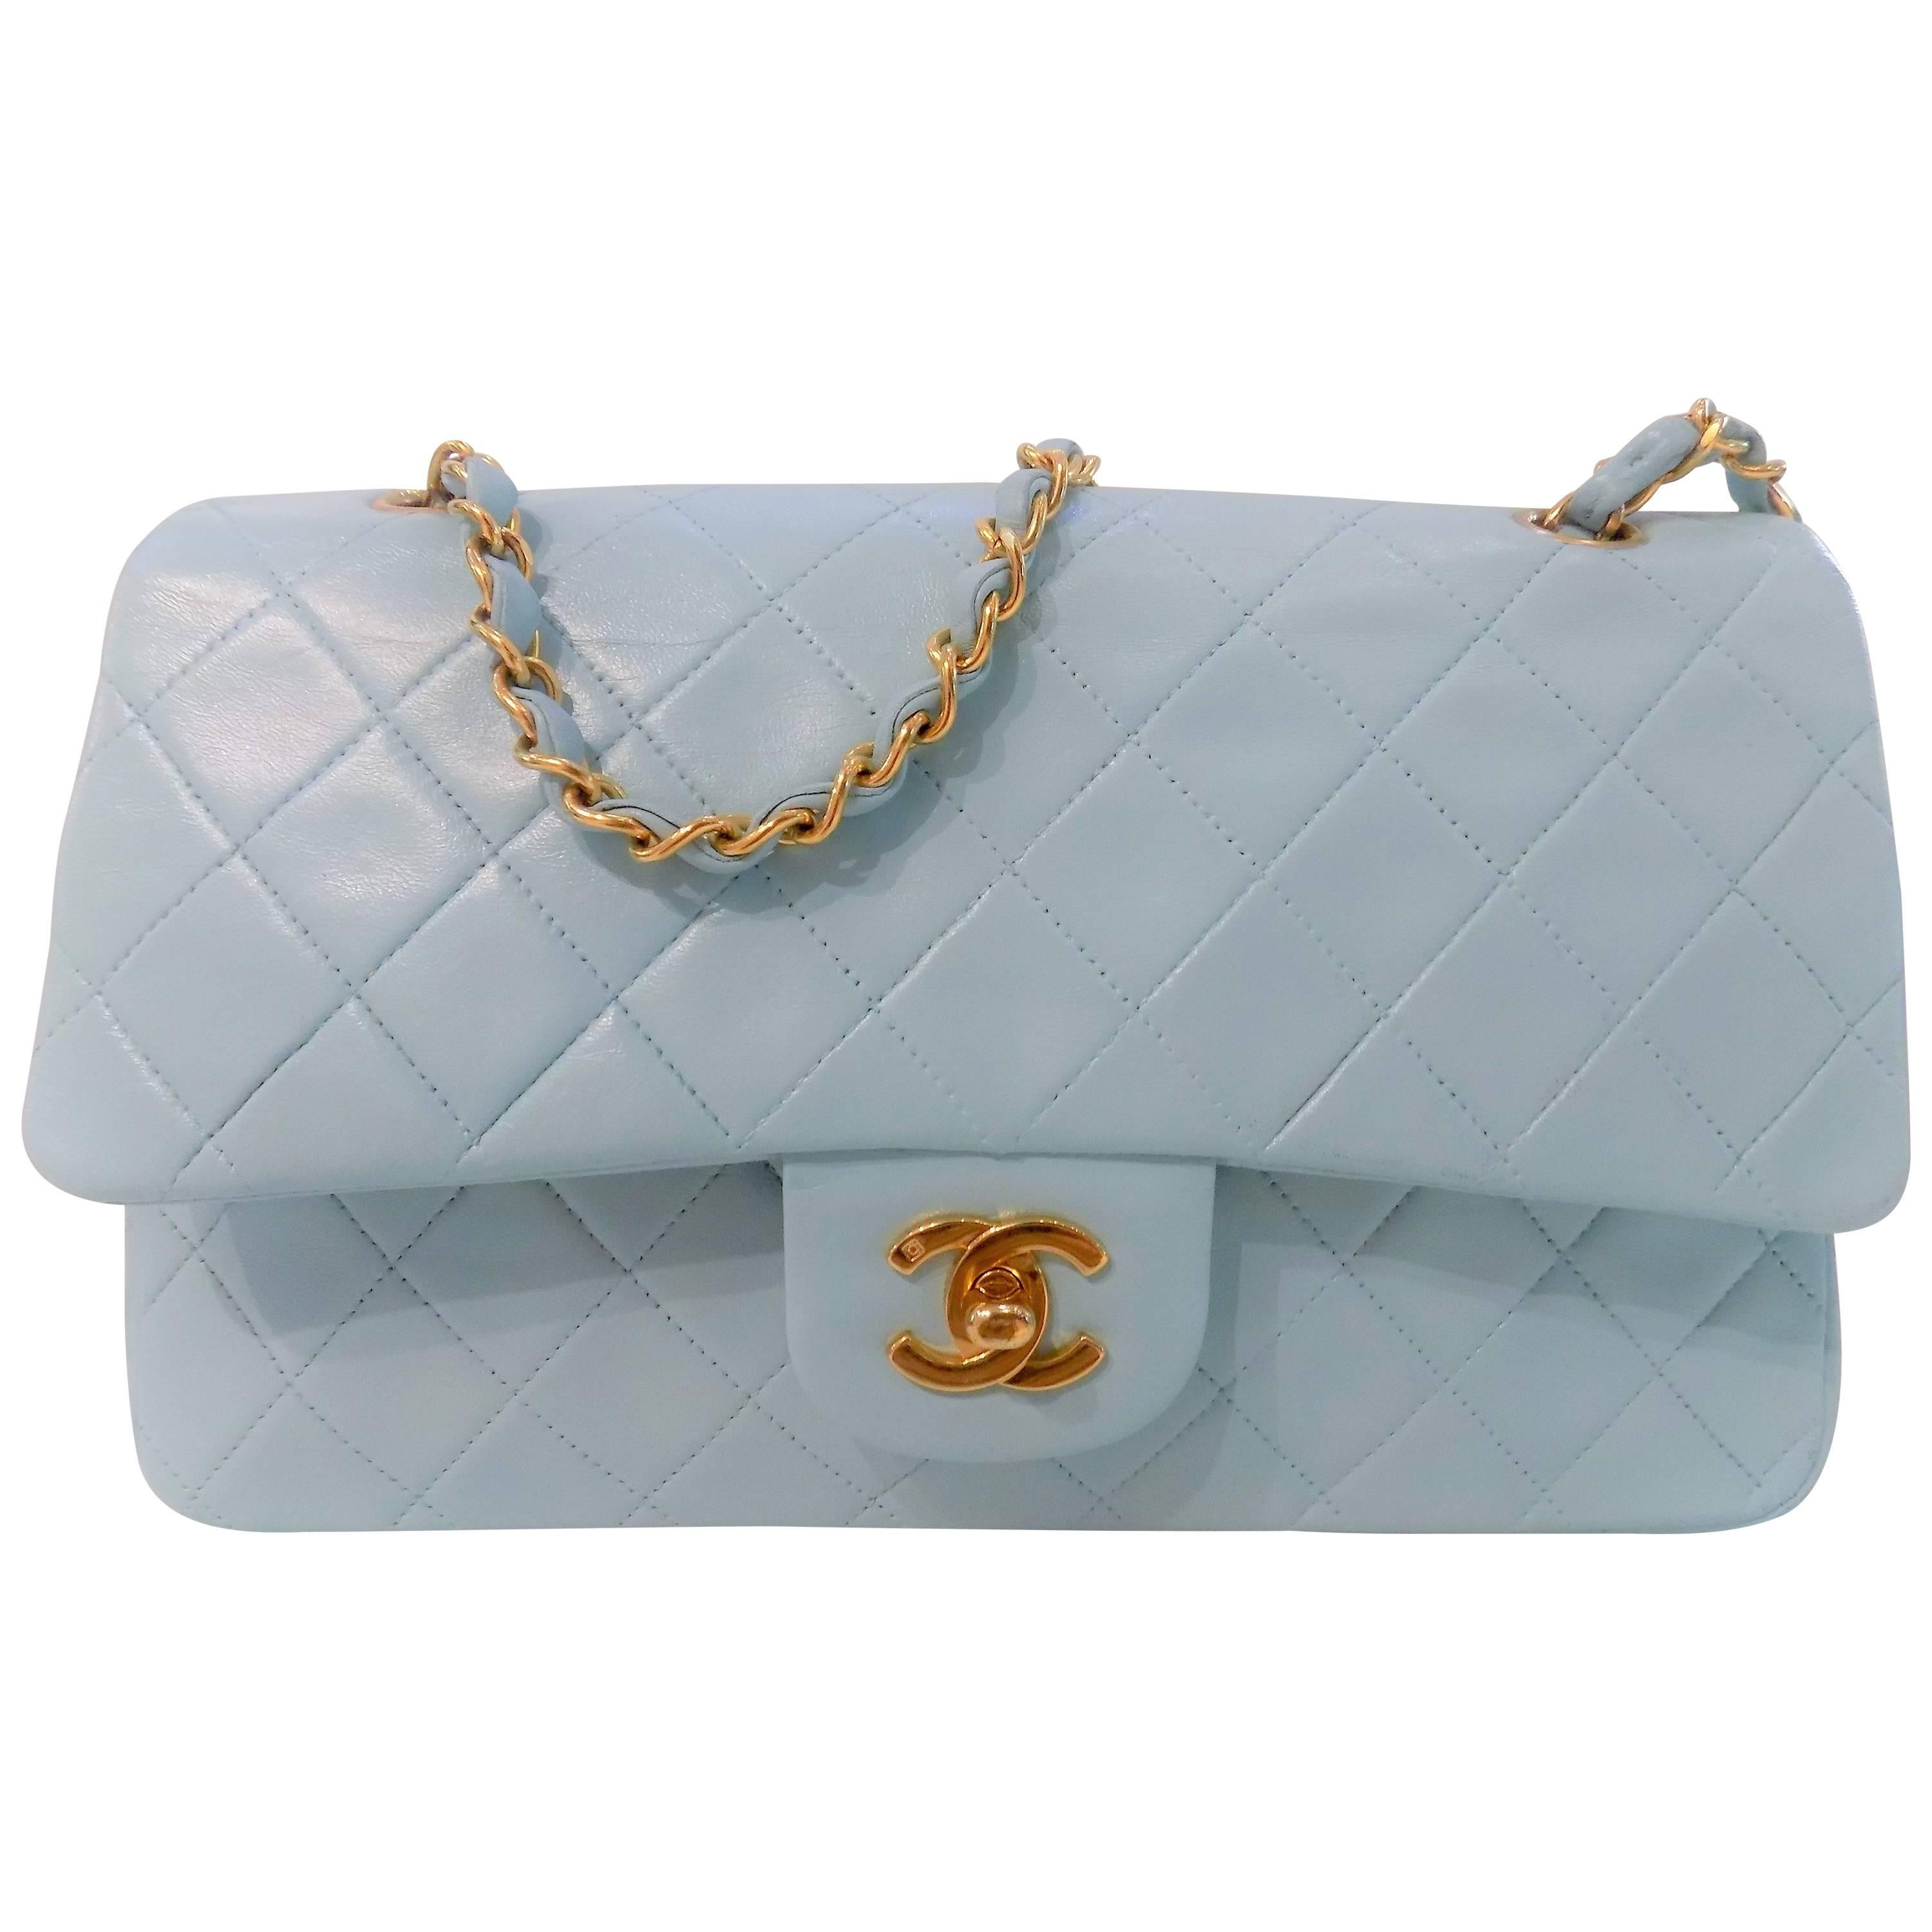 Chanel Light Blue 2.55 Leather Bag